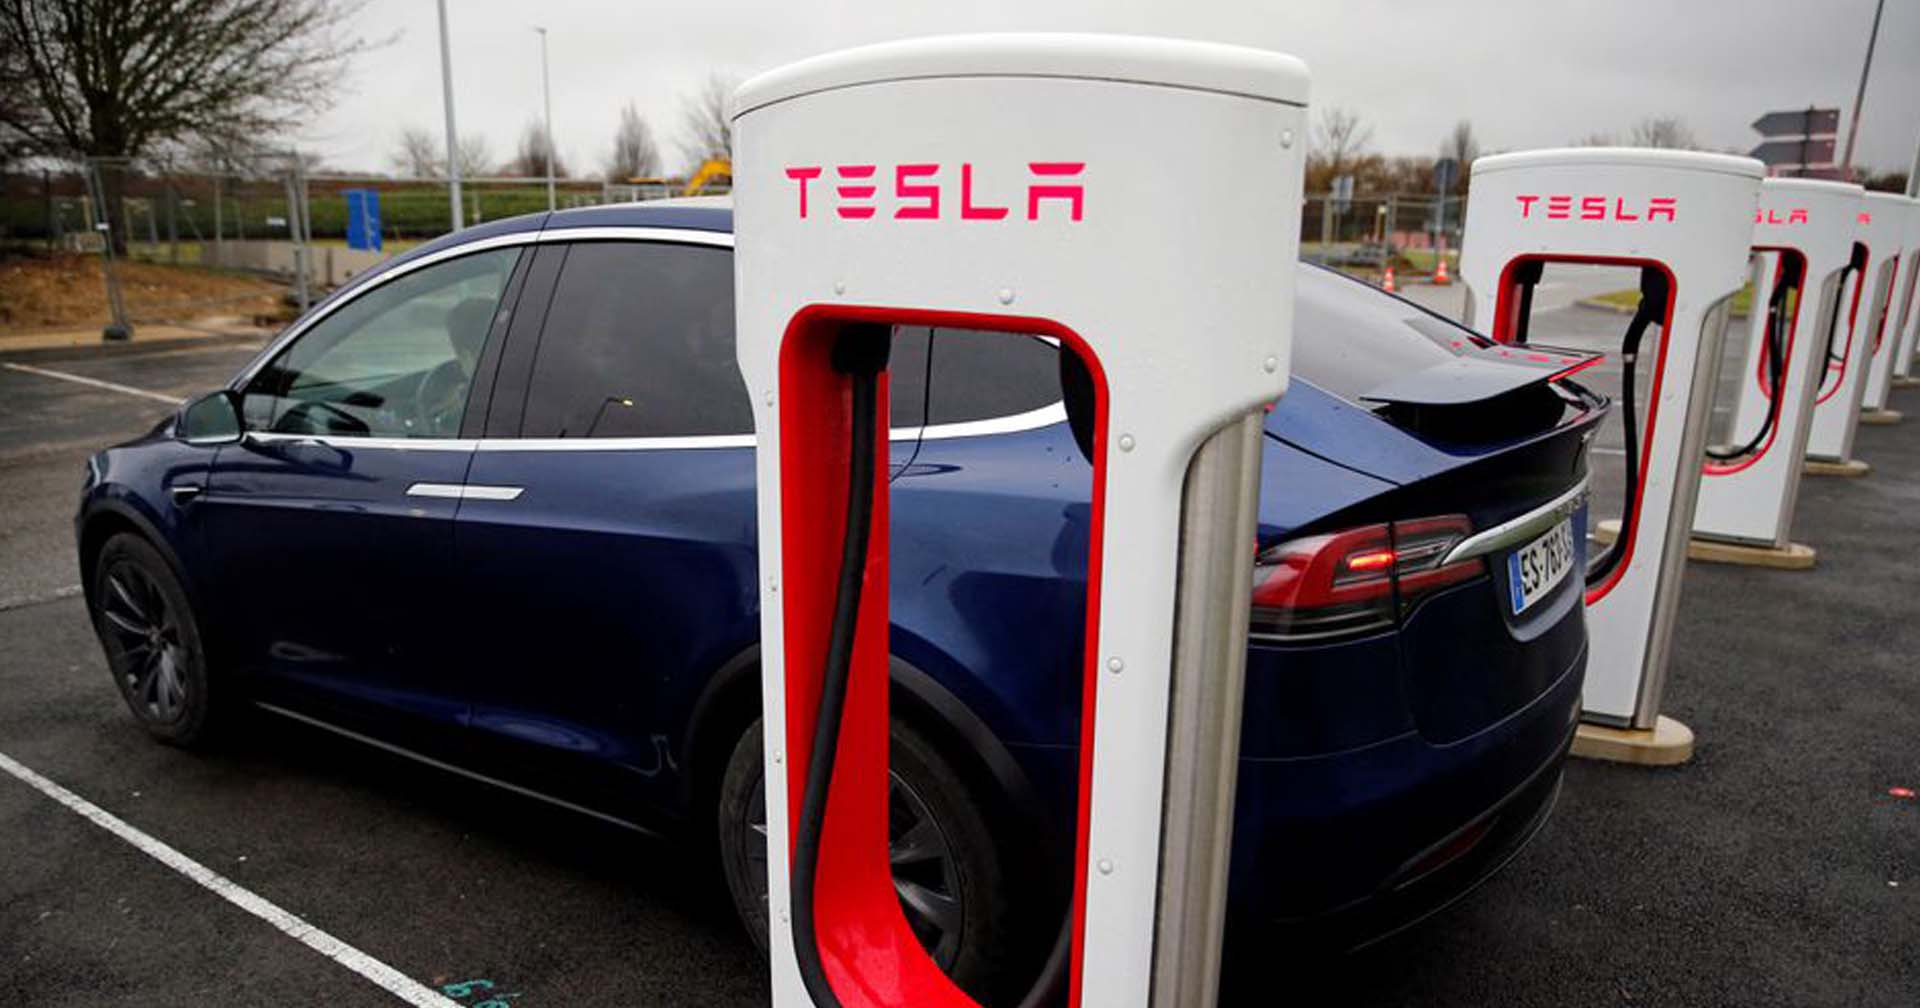 Tesla เรียกคืนรถยนต์ไฟฟ้า 422 คันในสหรัฐฯ พบปัญหาน็อตยึดคานด้านข้างของช่วงล่างหลวม